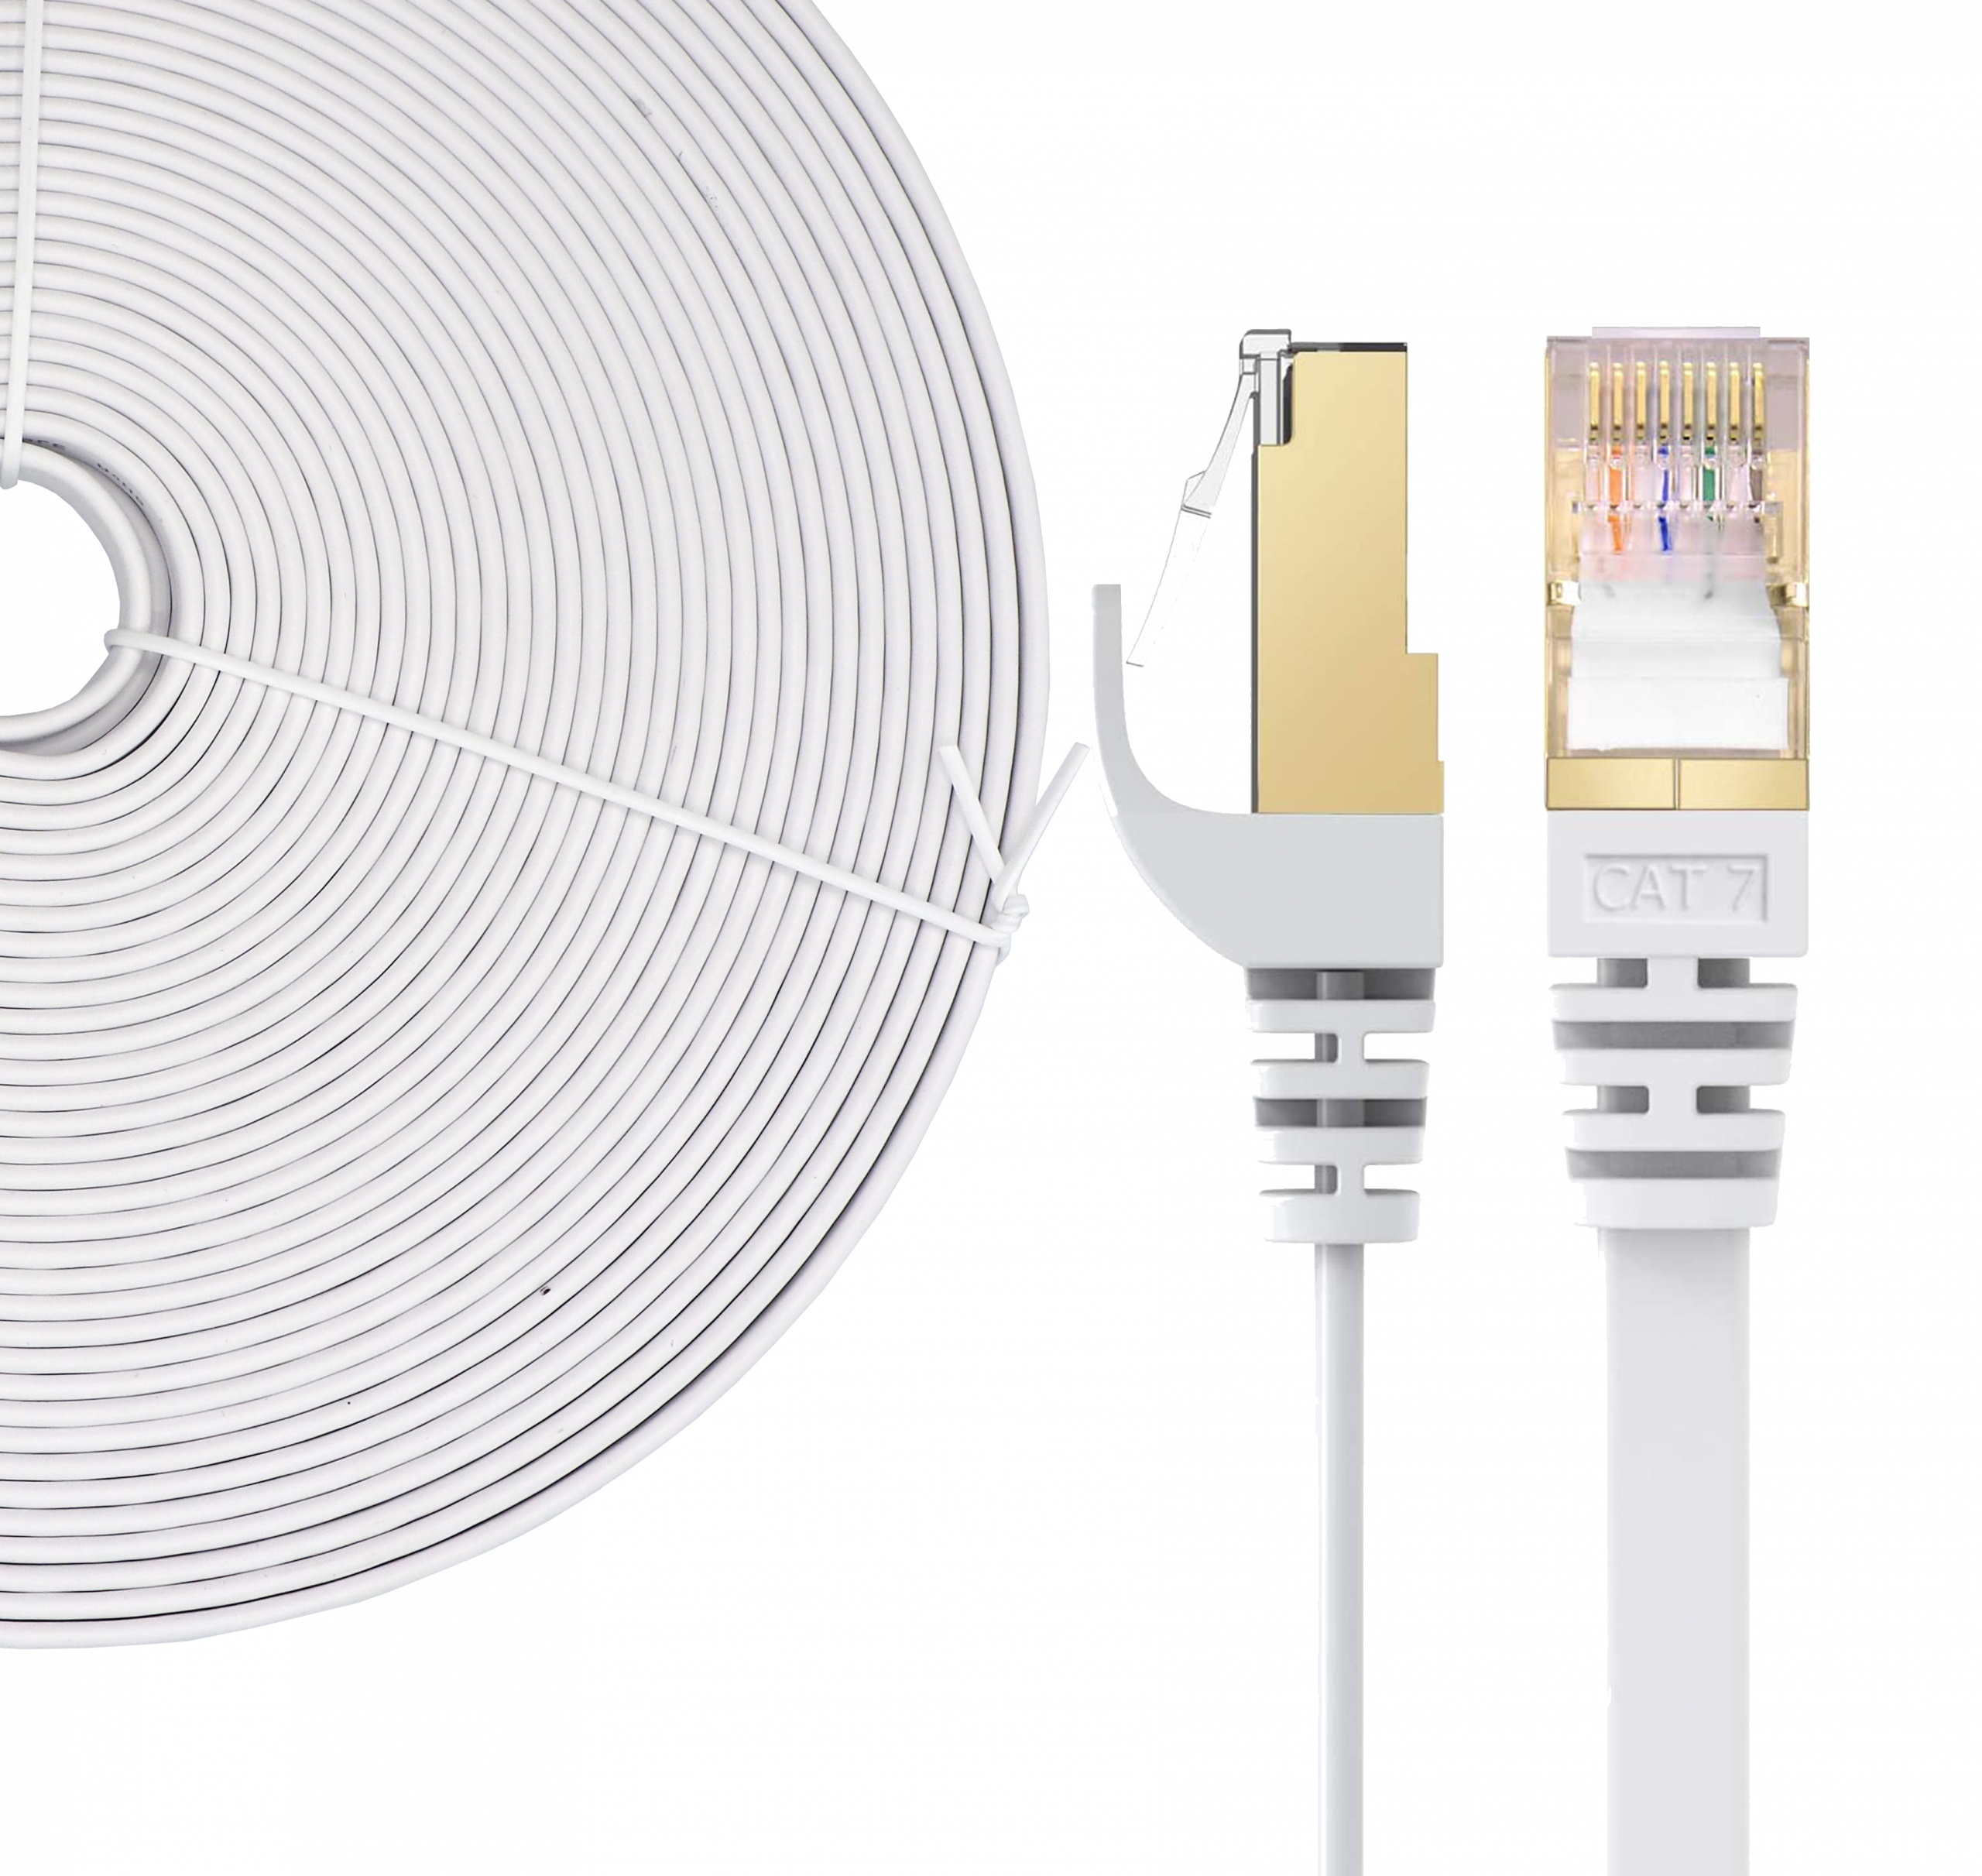 Elfcam® - 8m Cable Reseau Ethernet RJ45 Cat 7, Paire Torsadee Blindee SFTP  100% Cuivre, 6mm Diametre de Cable, 28 AWG Cable Rond & Noir (8M)